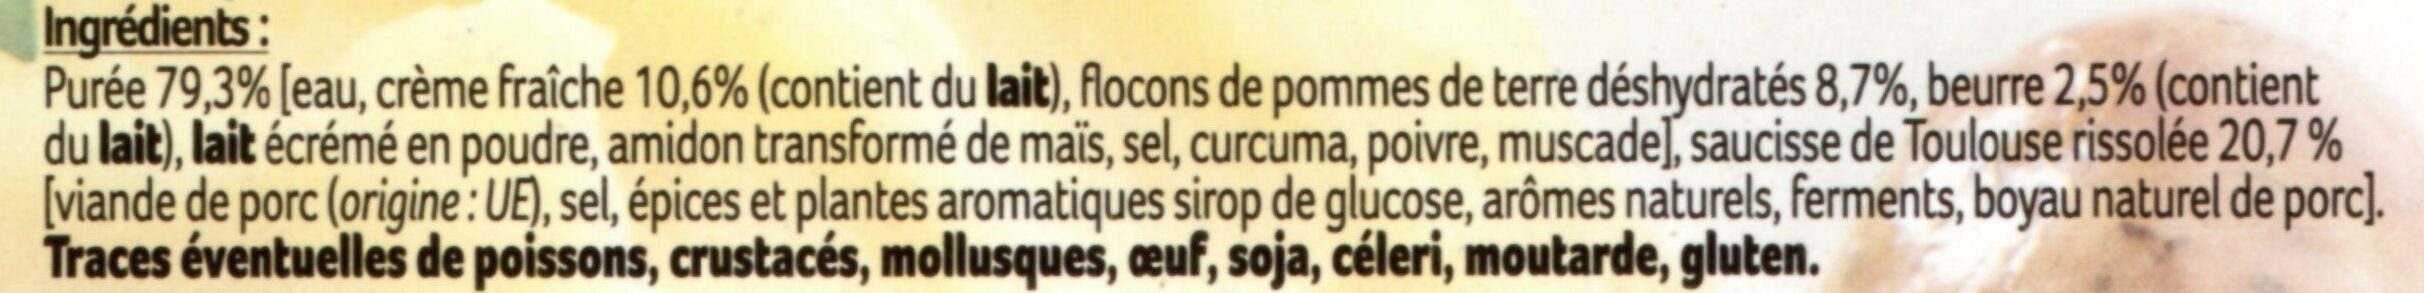 Saucisse de Toulouse et purée - Ingredients - fr